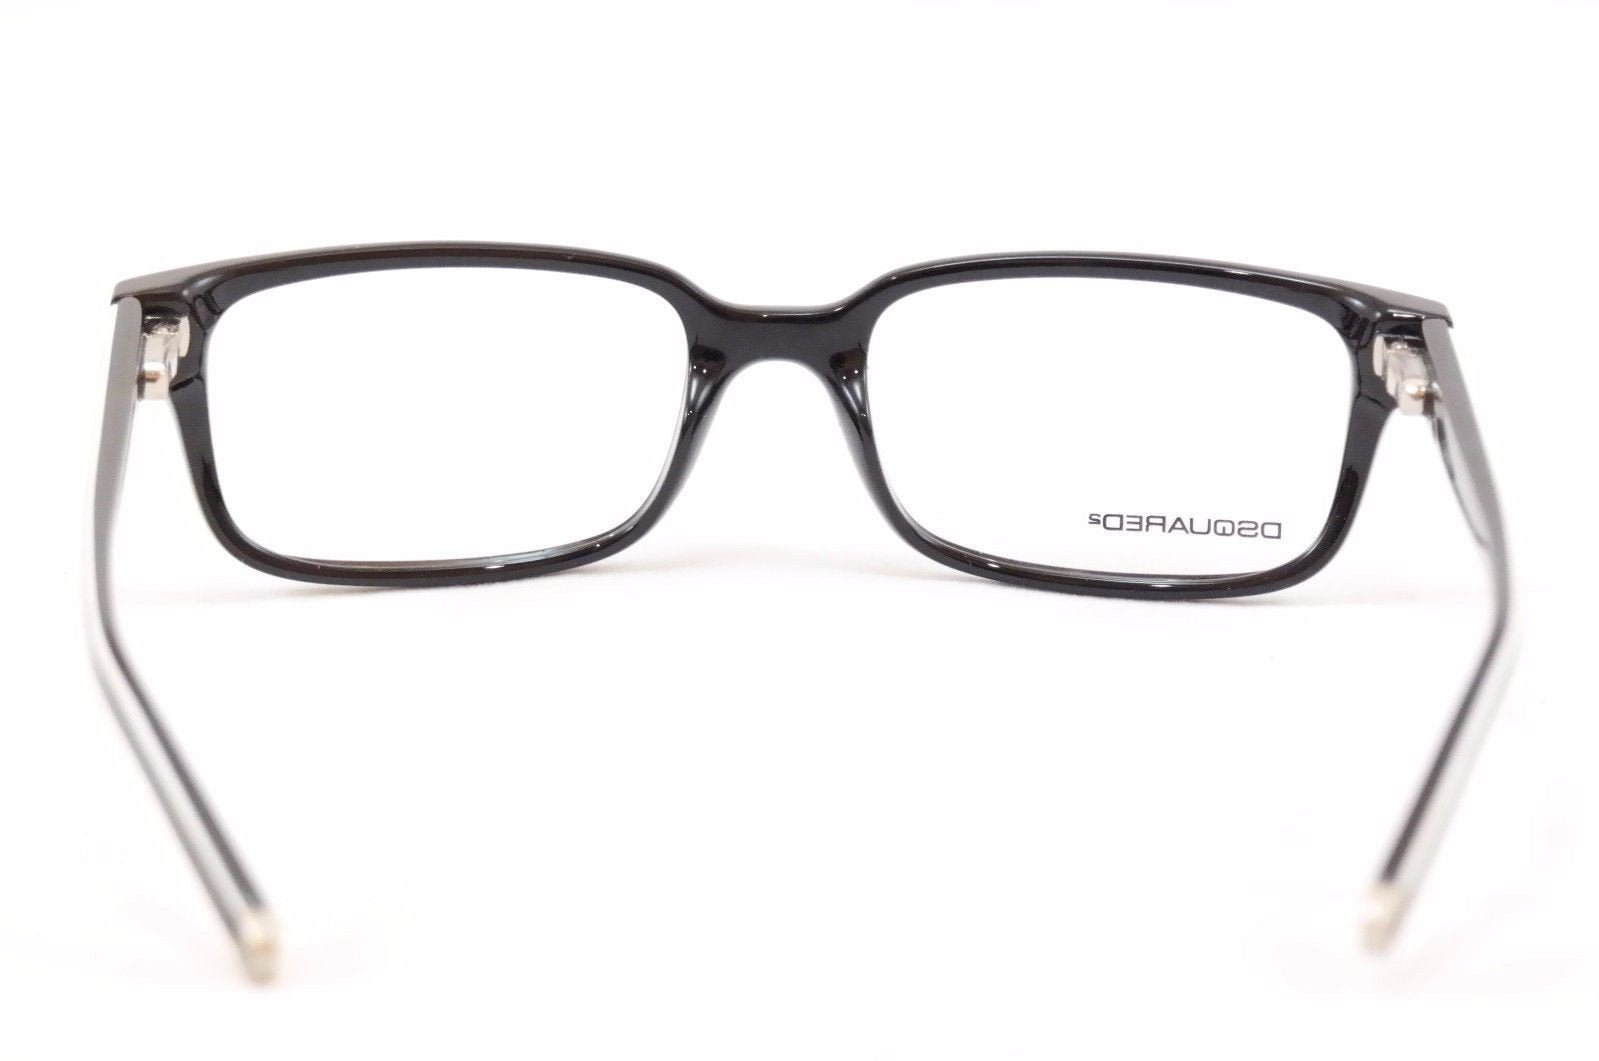 Dsquared2 Eyeglasses Frame DQ5018 001 Black White Plastic China Made 52-17-140 - Frame Bay